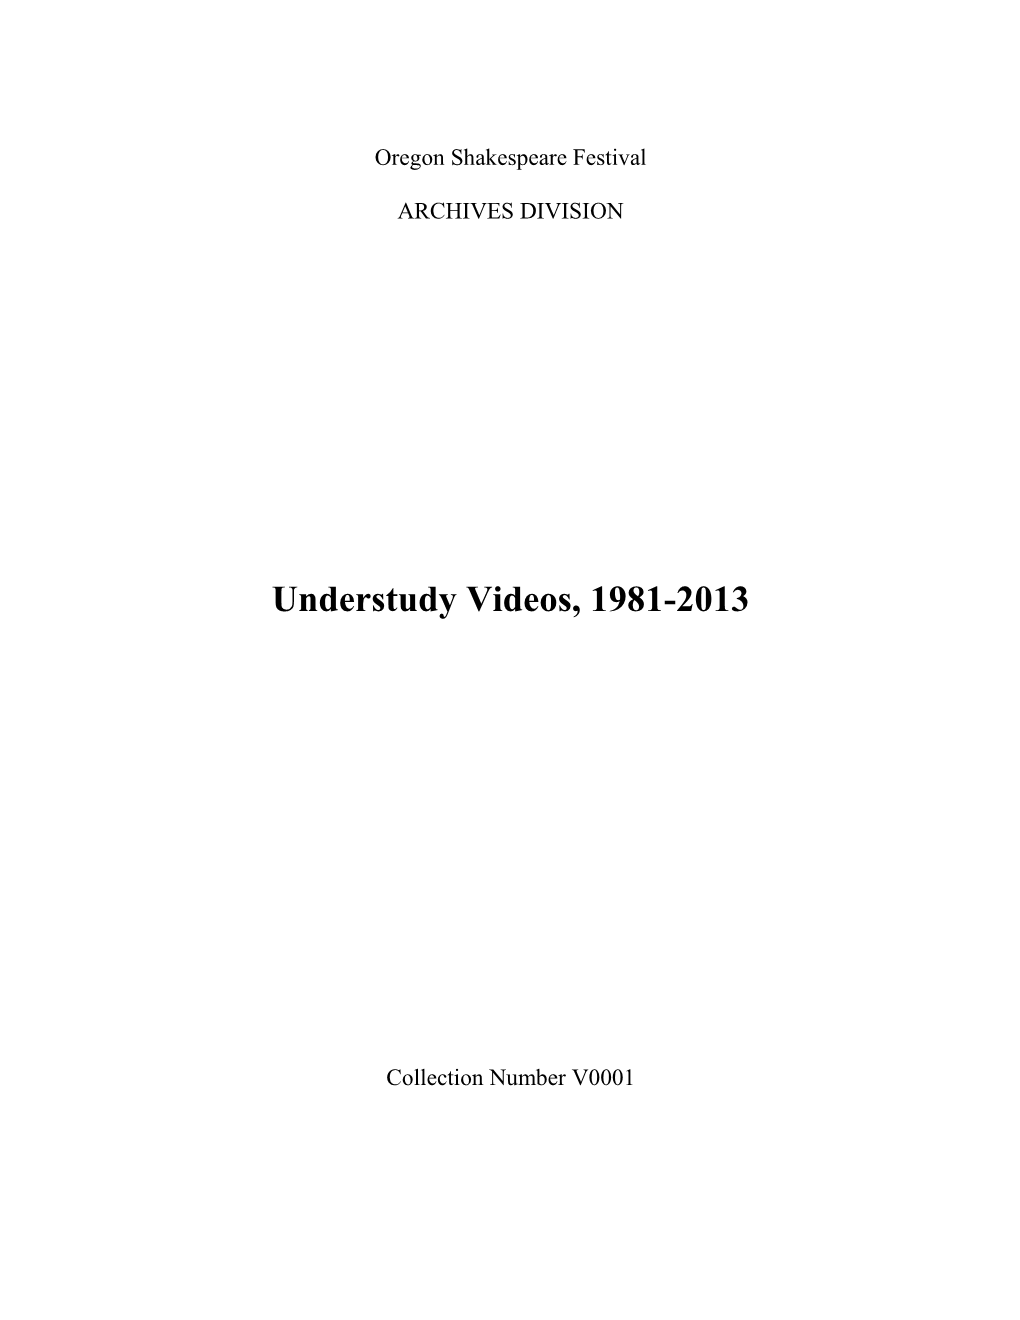 Understudy Videos, 1981-2013